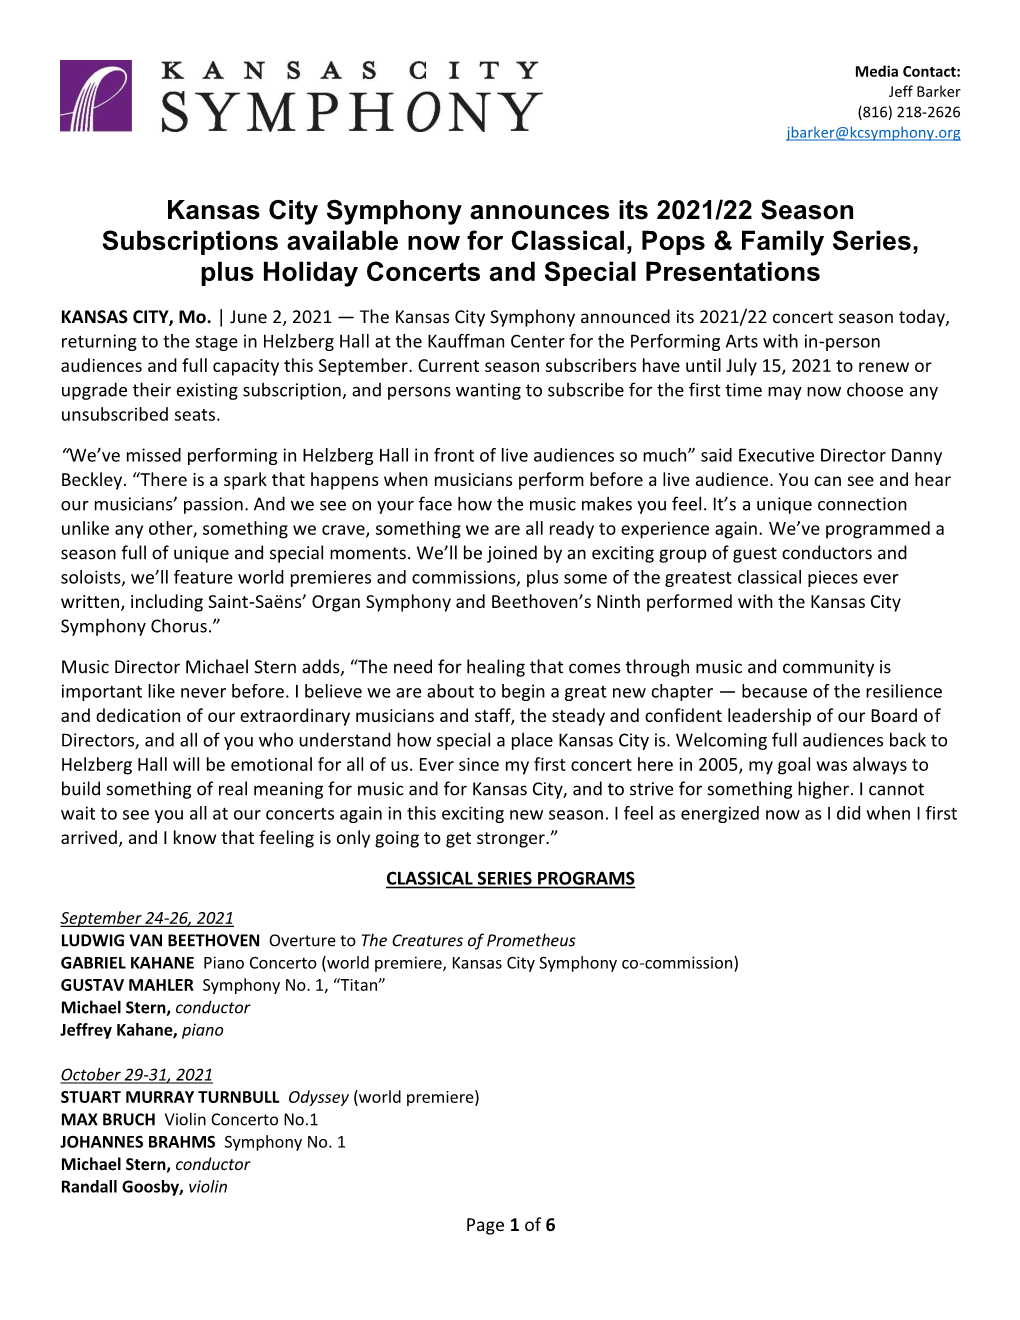 KC Symphony Announces 2021/22 Concert Season